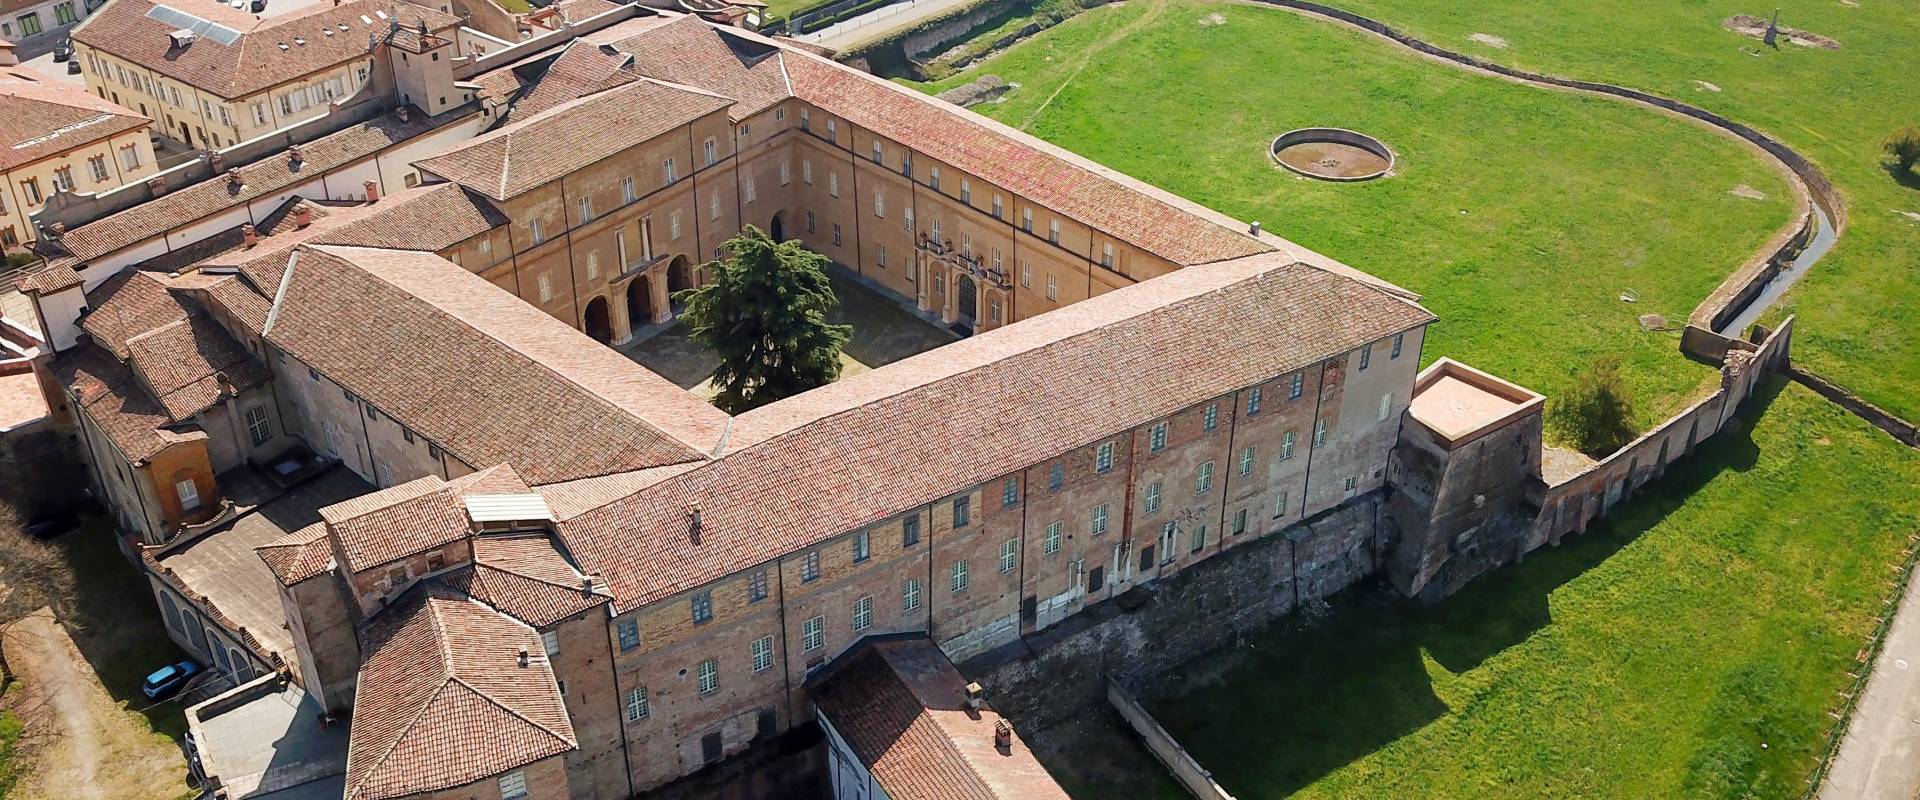 Palazzo ducale vista aerea foto di Mauroriccio